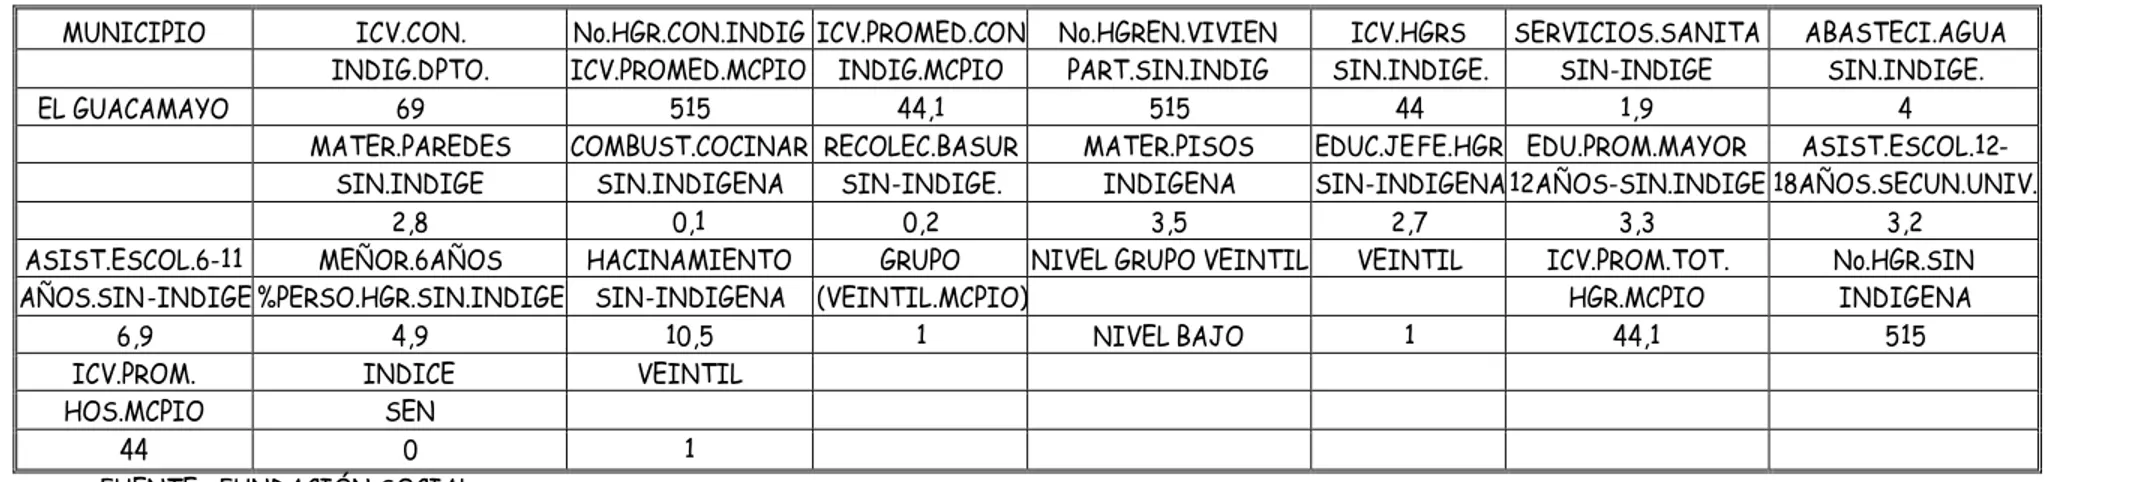 TABLA 34.  TIPOLOGIA MUNICIPAL CON BASE EN LAS CONDICIONES DE VIDA 